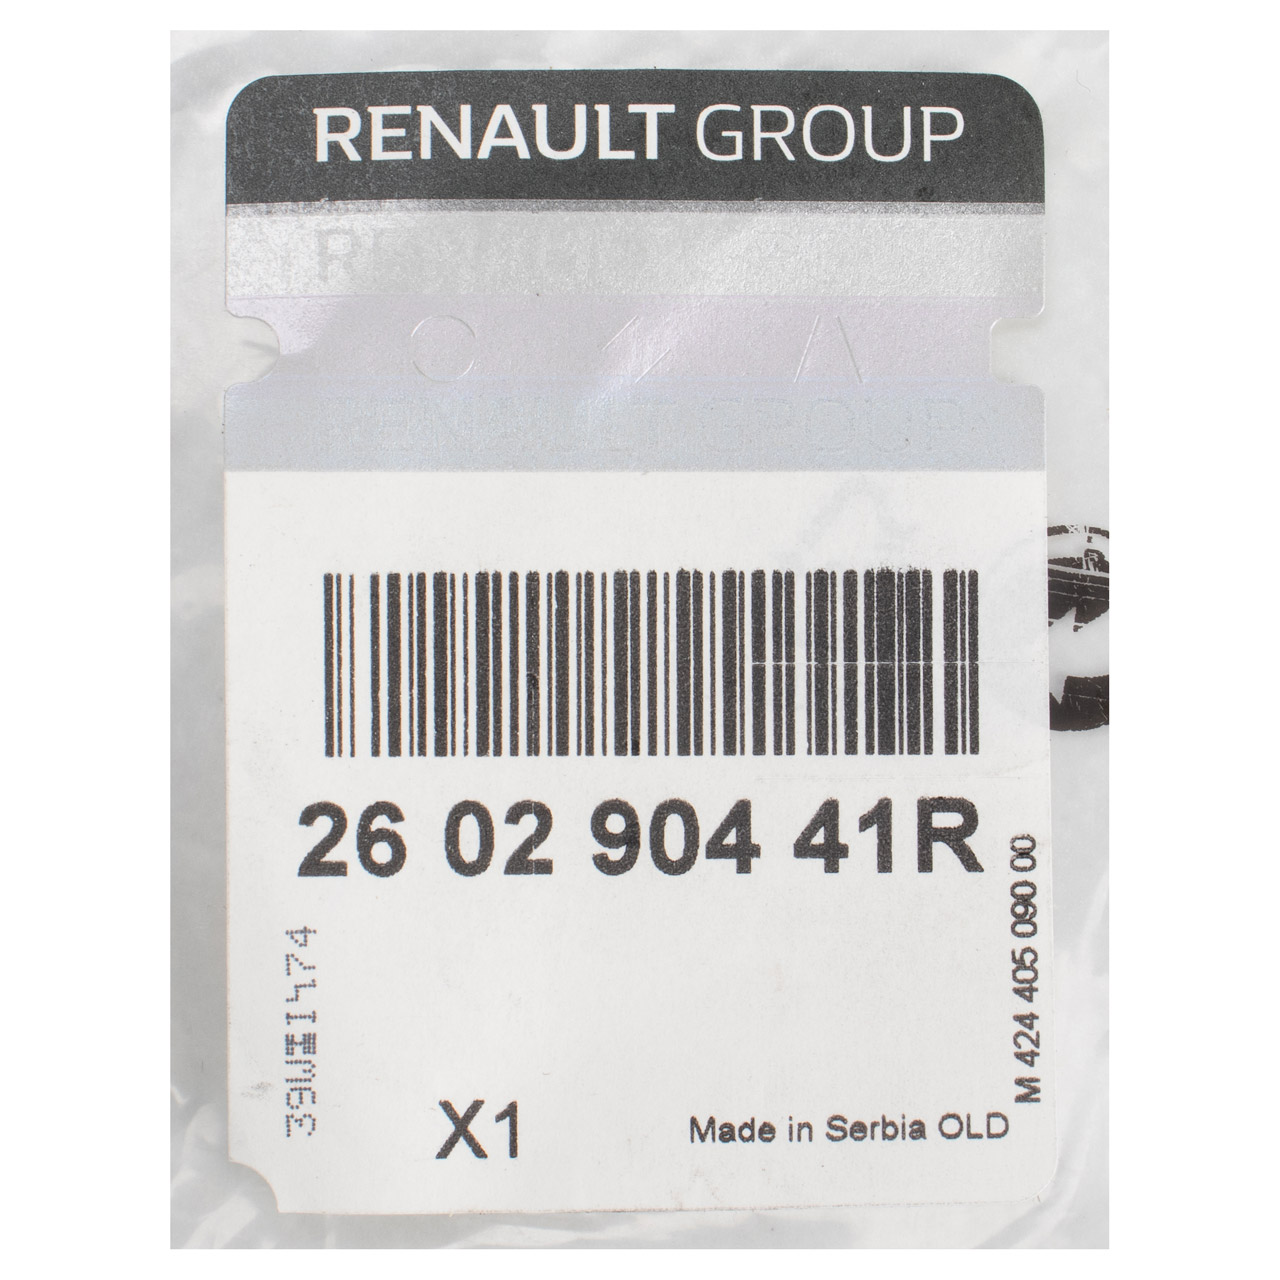 ORIGINAL Renault Dacia Abdeckung Blende Kappe Scheinwerfer Duster Captur vorne 260290441R